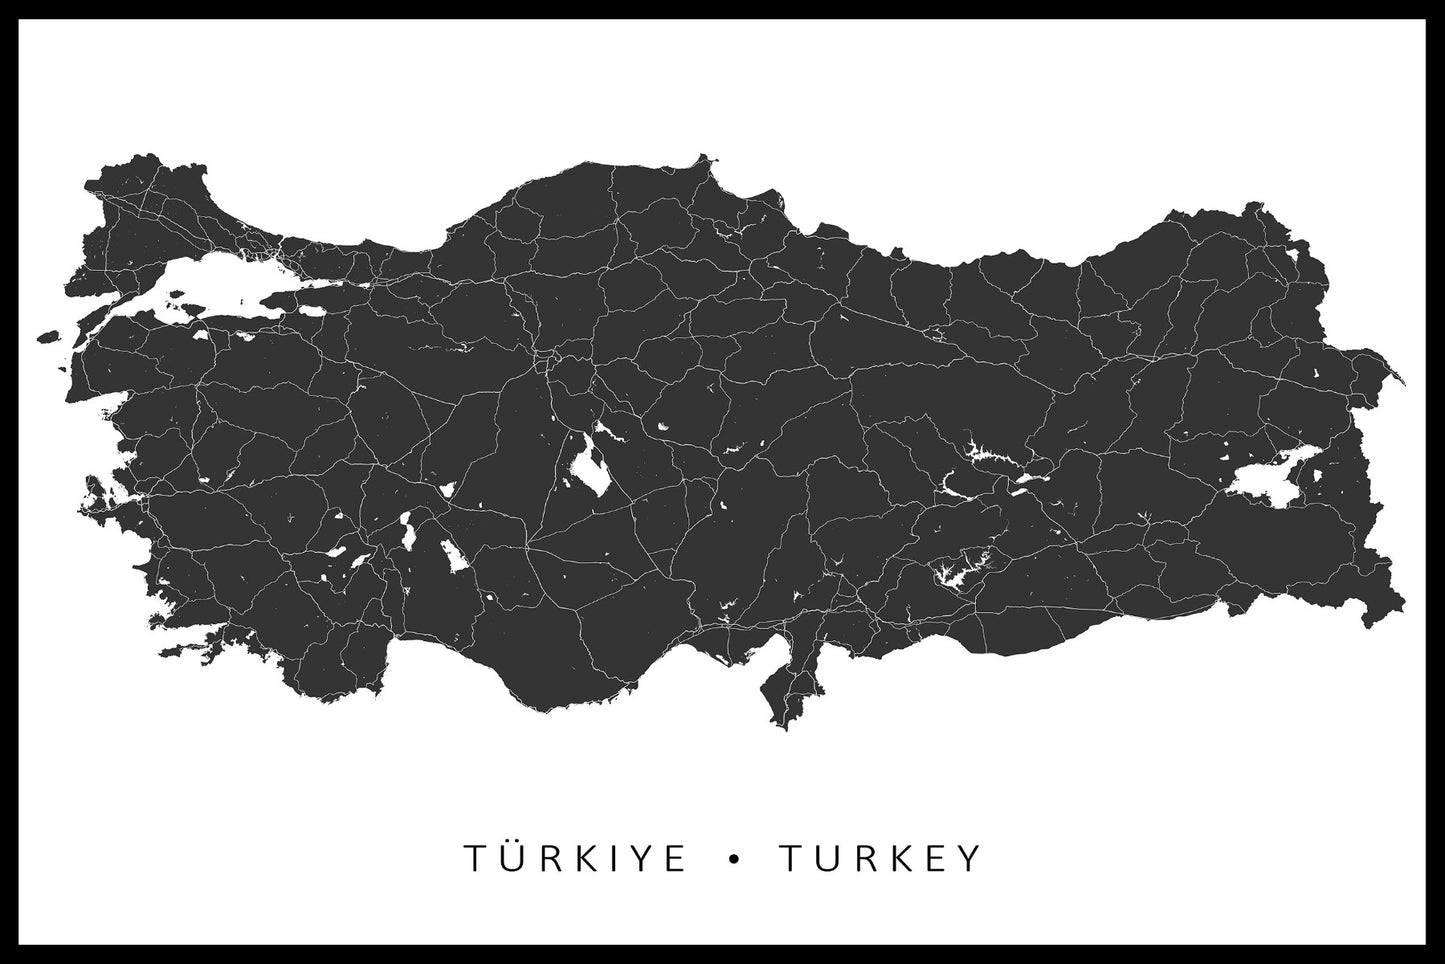  Emner på kort over Tyrkiet